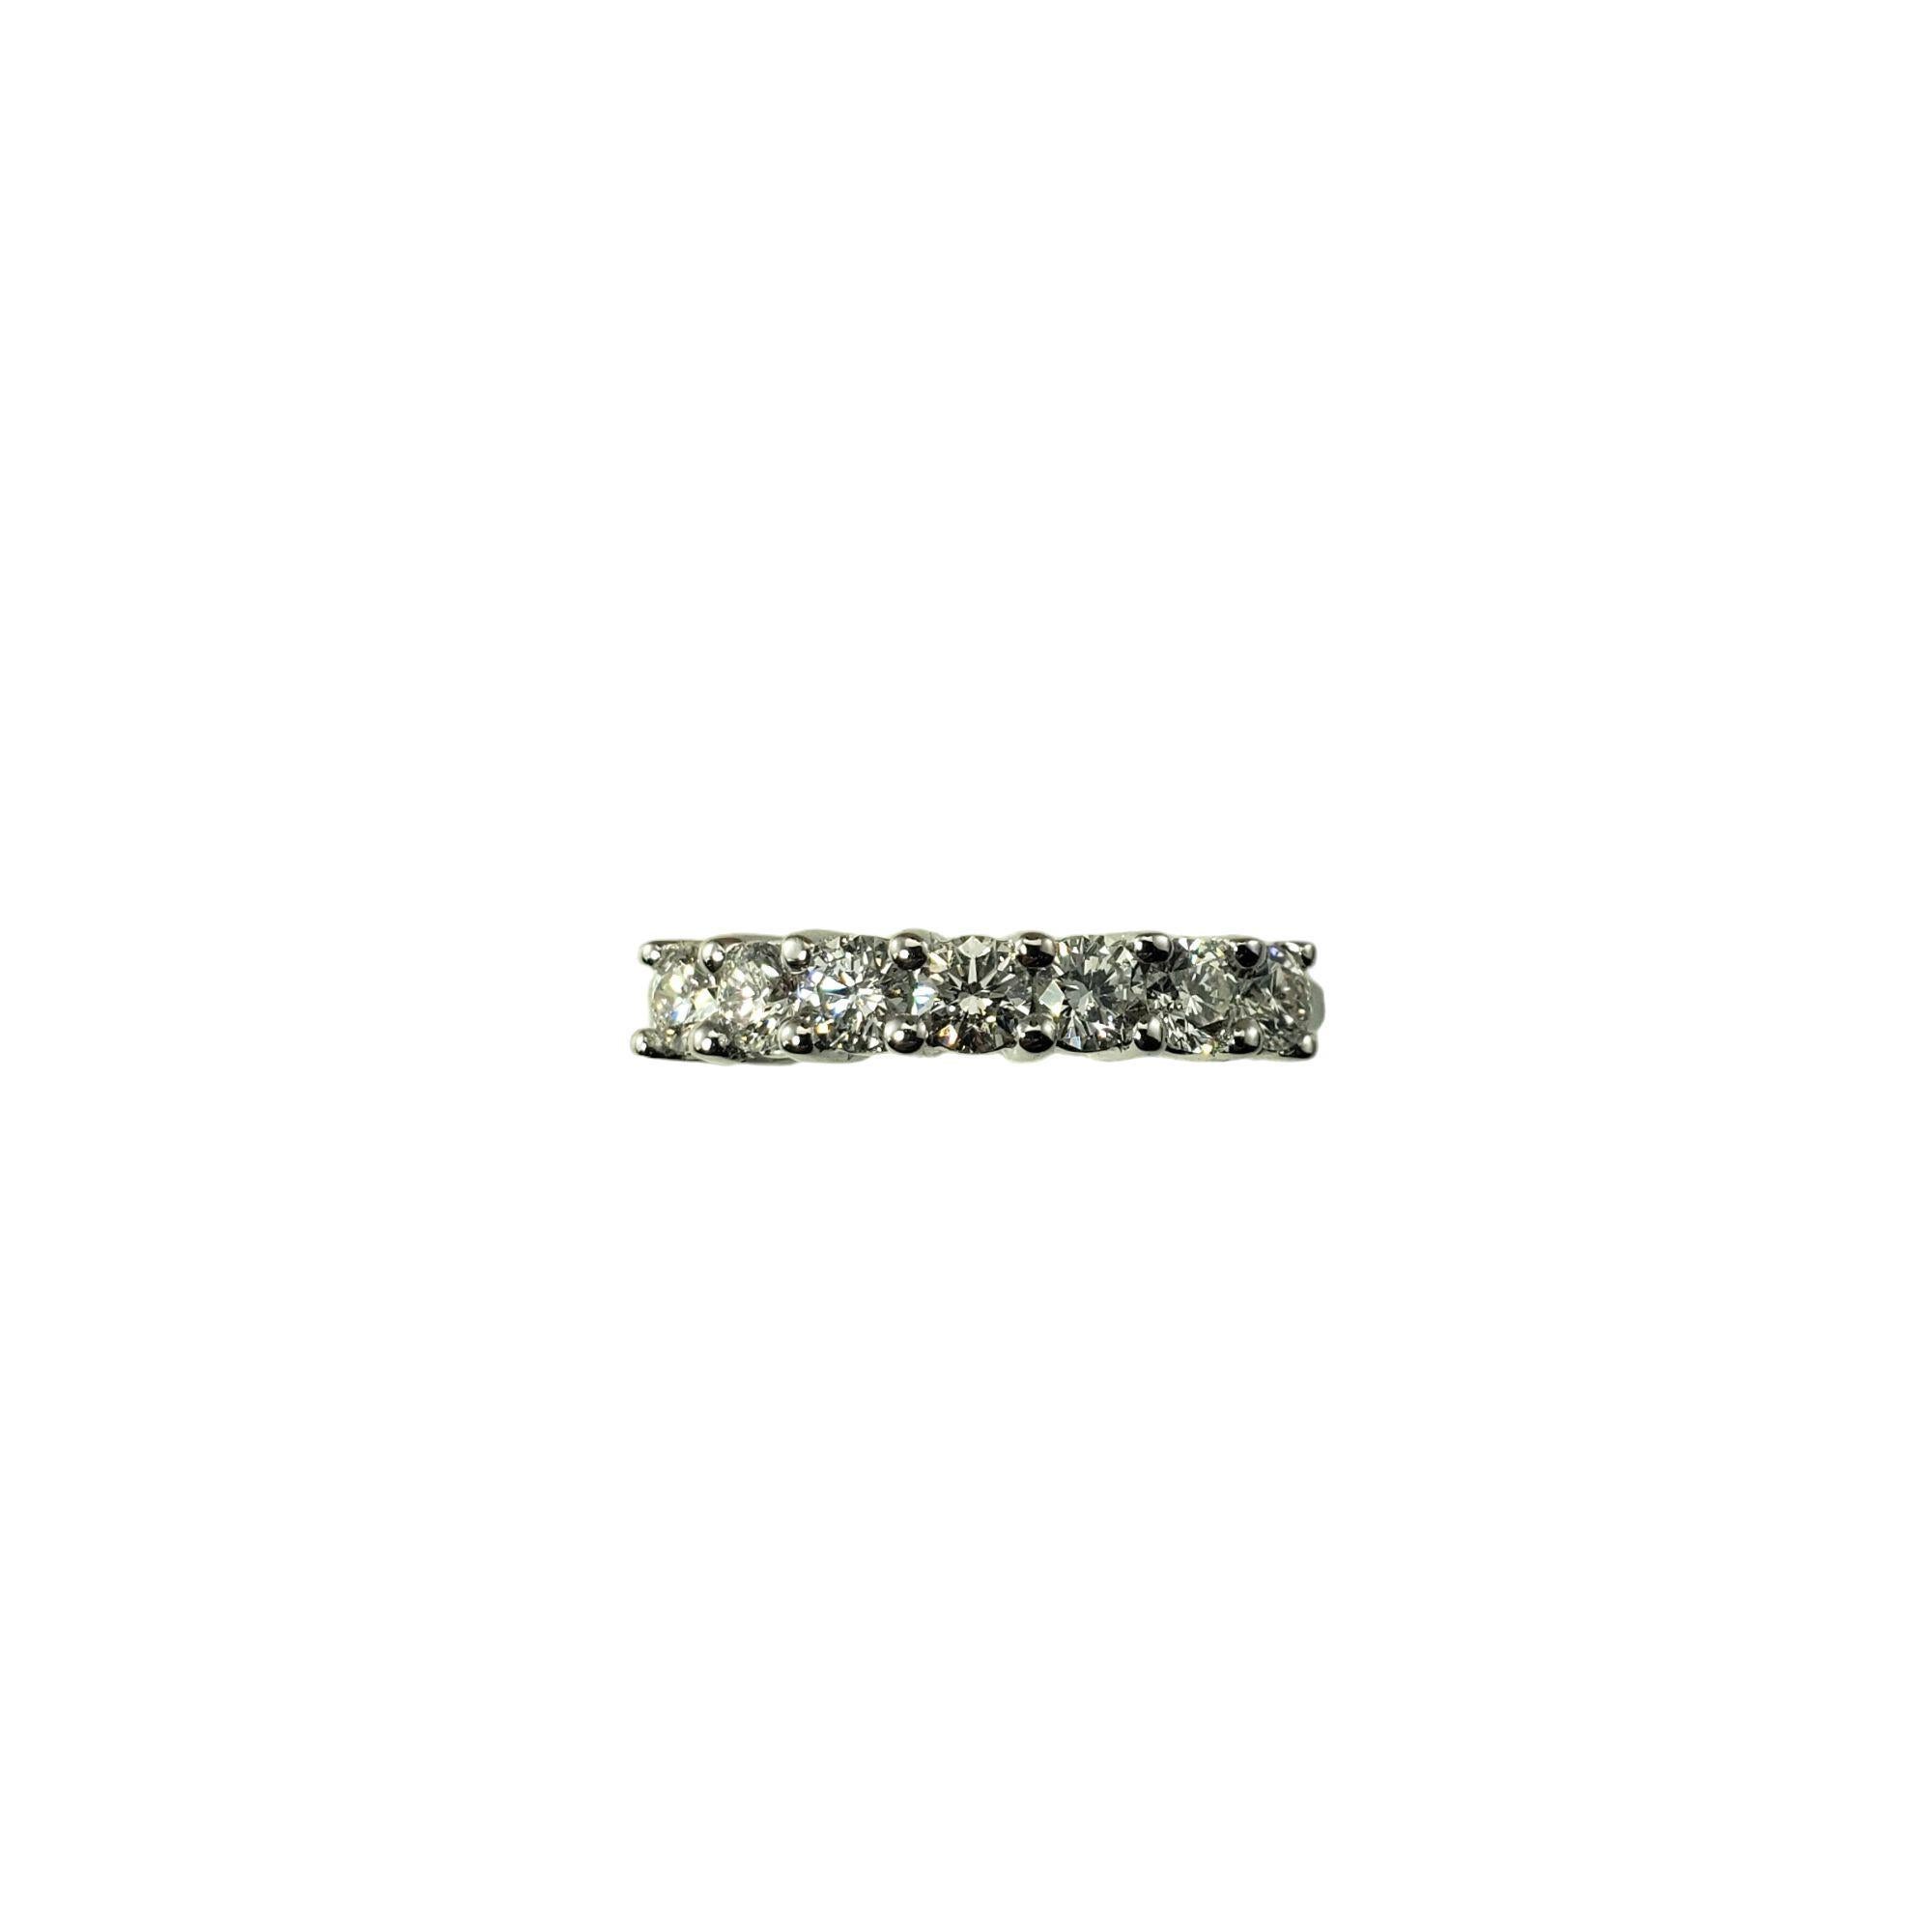 14 Karat White Gold and Diamond Wedding Band Ring Size 6.25 JAGi Certified-

Ce bracelet étincelant présente sept diamants ronds de taille brillante sertis dans de l'or blanc 14K classique. Largeur : 4 mm. Queue : 1,5 mm.

Poids total des diamants :